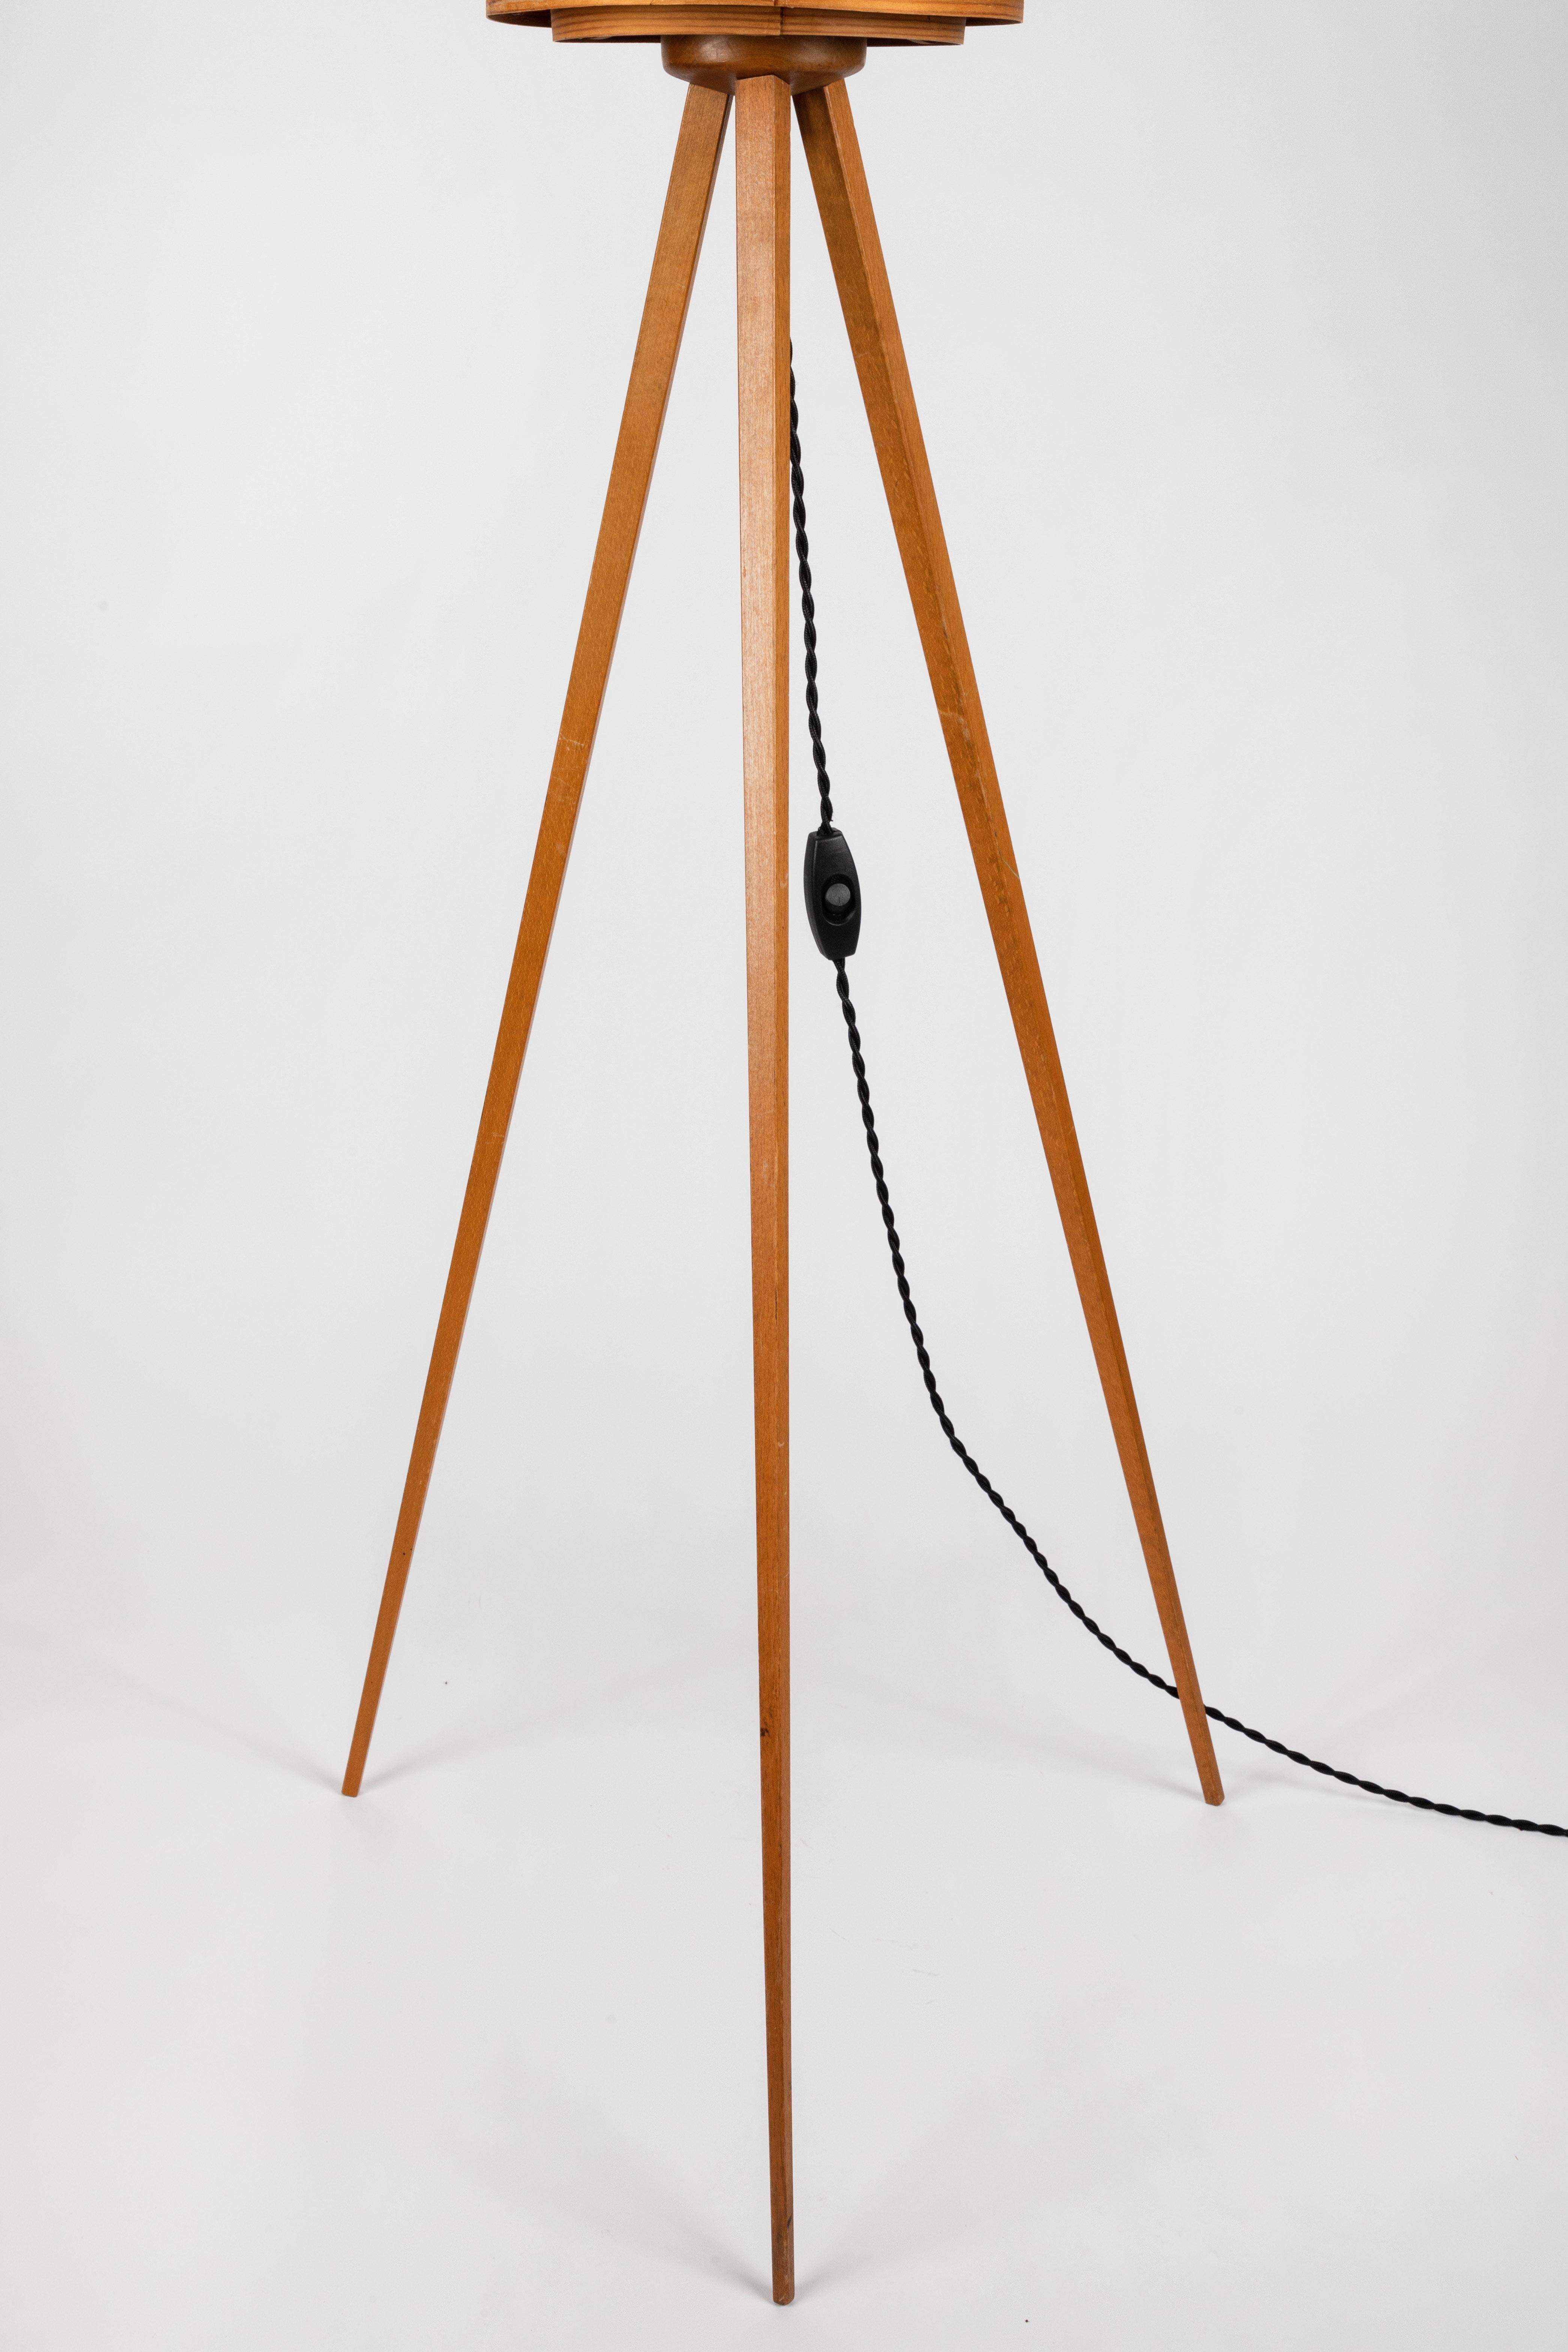 1960s Hans-Agne Jakobsson Wood Tripod Floor Lamp for AB Ellysett 10